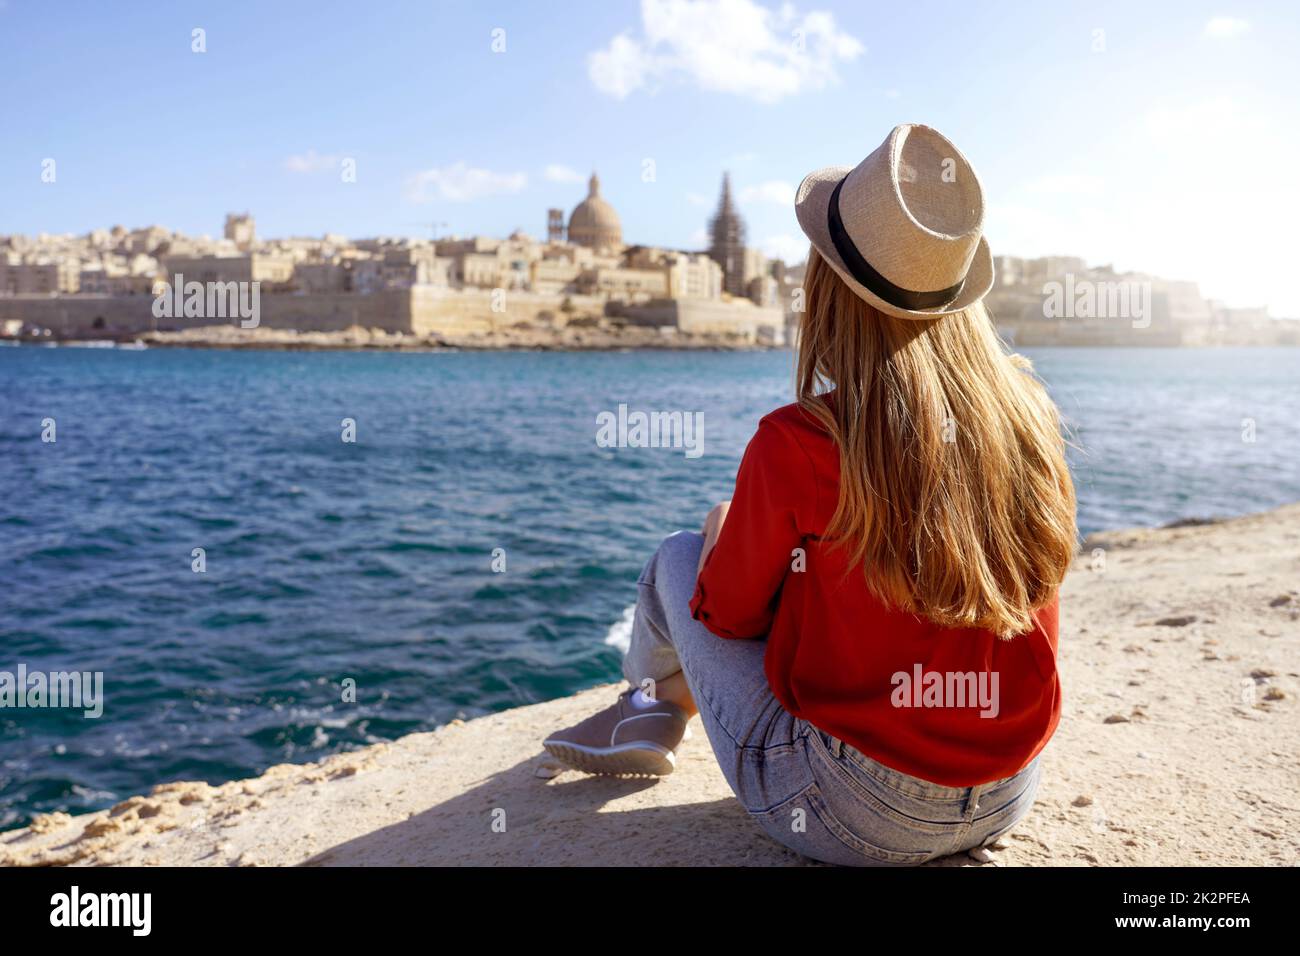 Concept de voyage avec des personnes indépendantes profitant de l'activité de loisirs en plein air et de la vie de Wanderlust style de vie. Une jeune femme s'assoit au bord de la mer et regarde le paysage étonnant de la Valette, à Malte. Banque D'Images